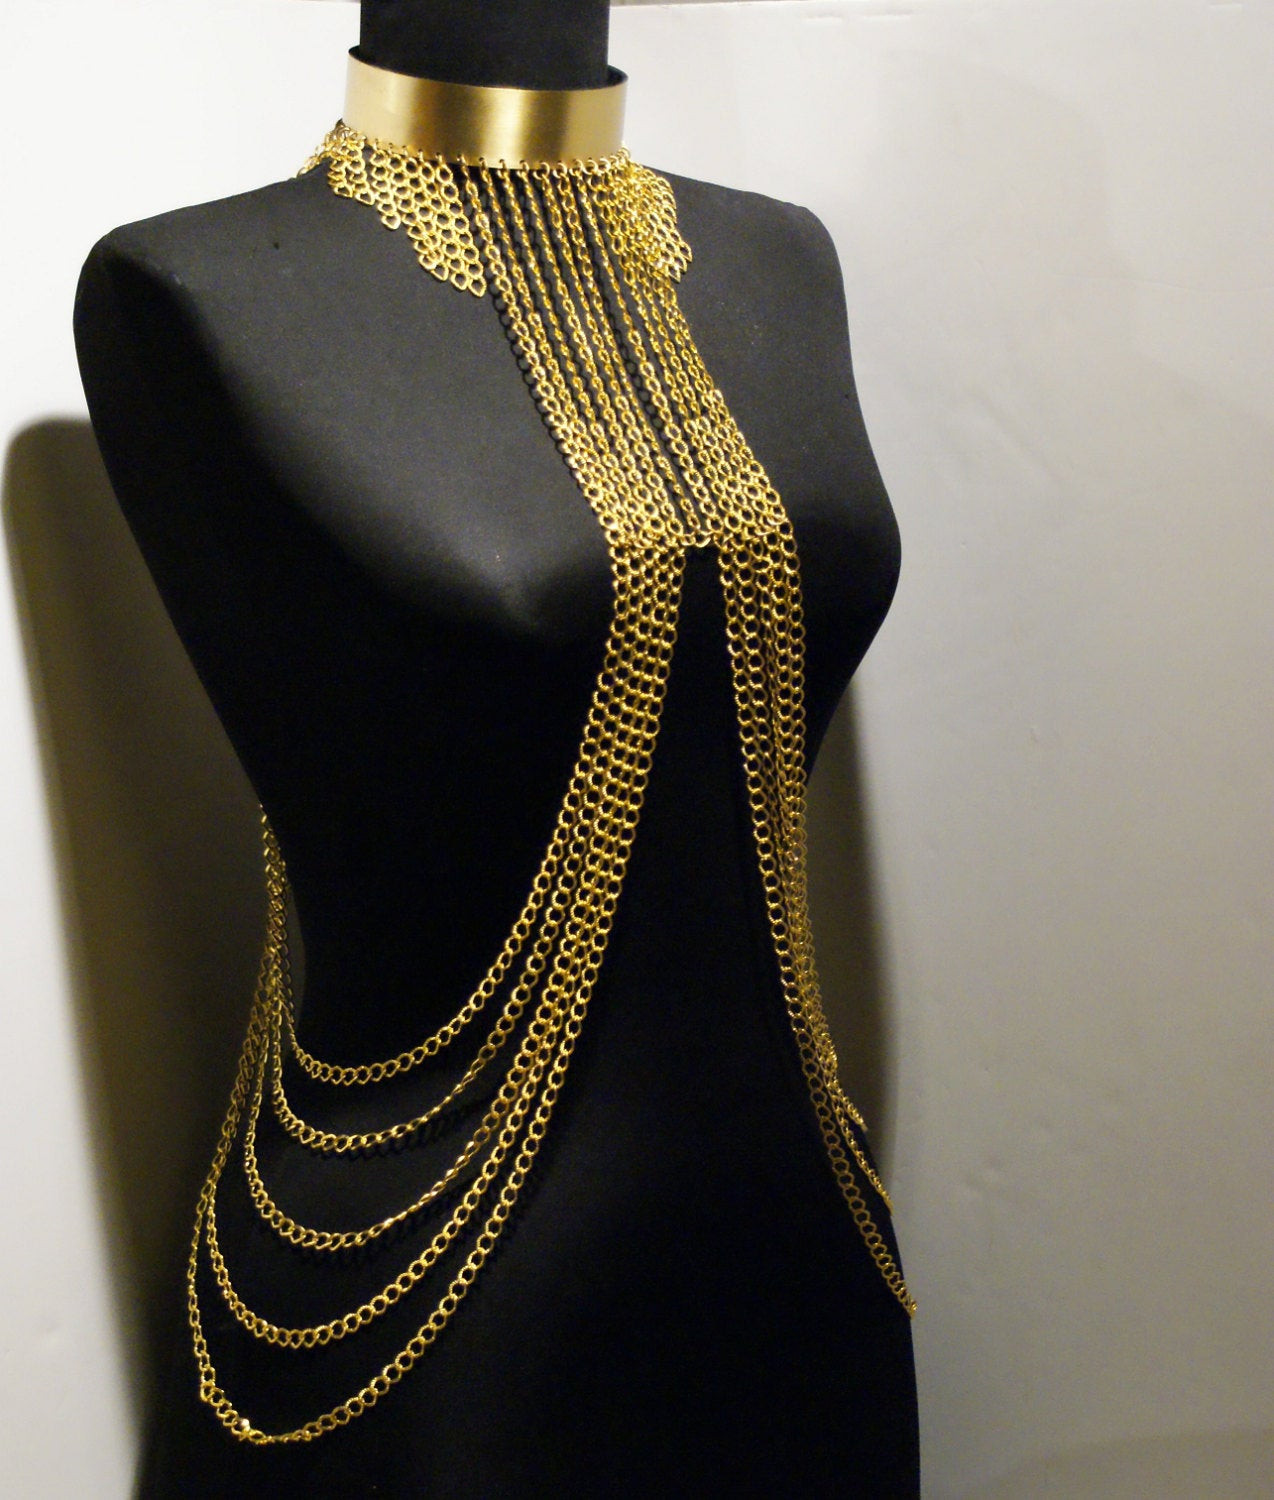 Body Jewelry Chains
 gold body chain body jewelry chain by BeyhanAkman on Etsy